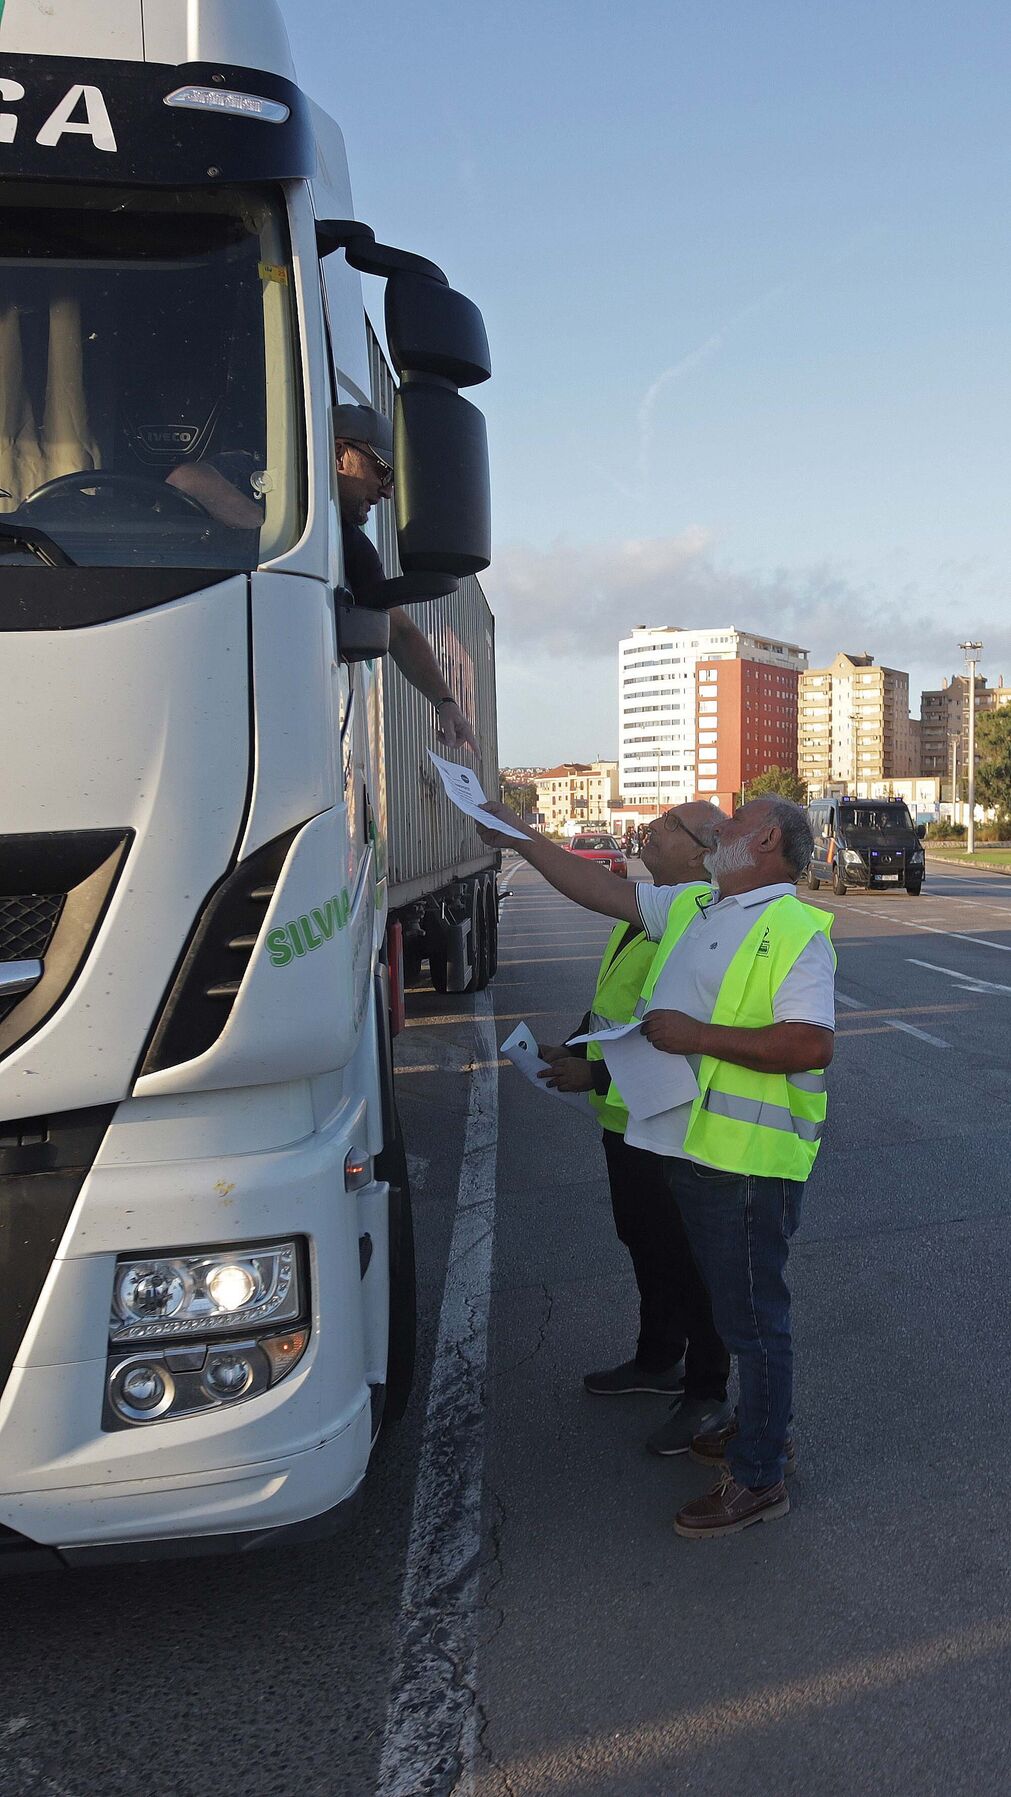 Fotos del paro de camioneros en el puerto de Algeciras